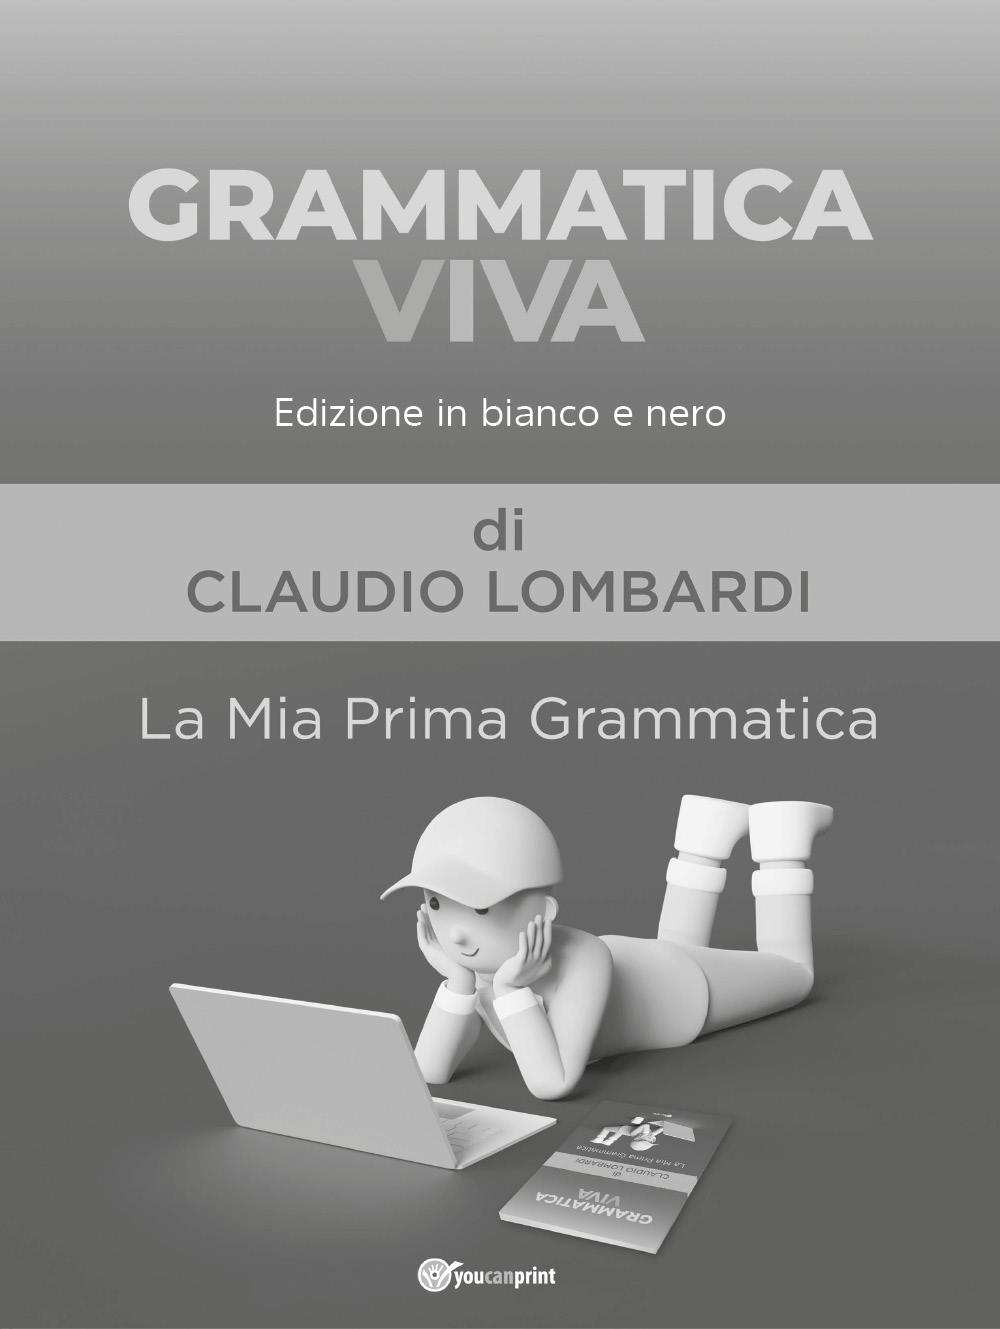 Grammatica Viva - Edizione in bianco e nero